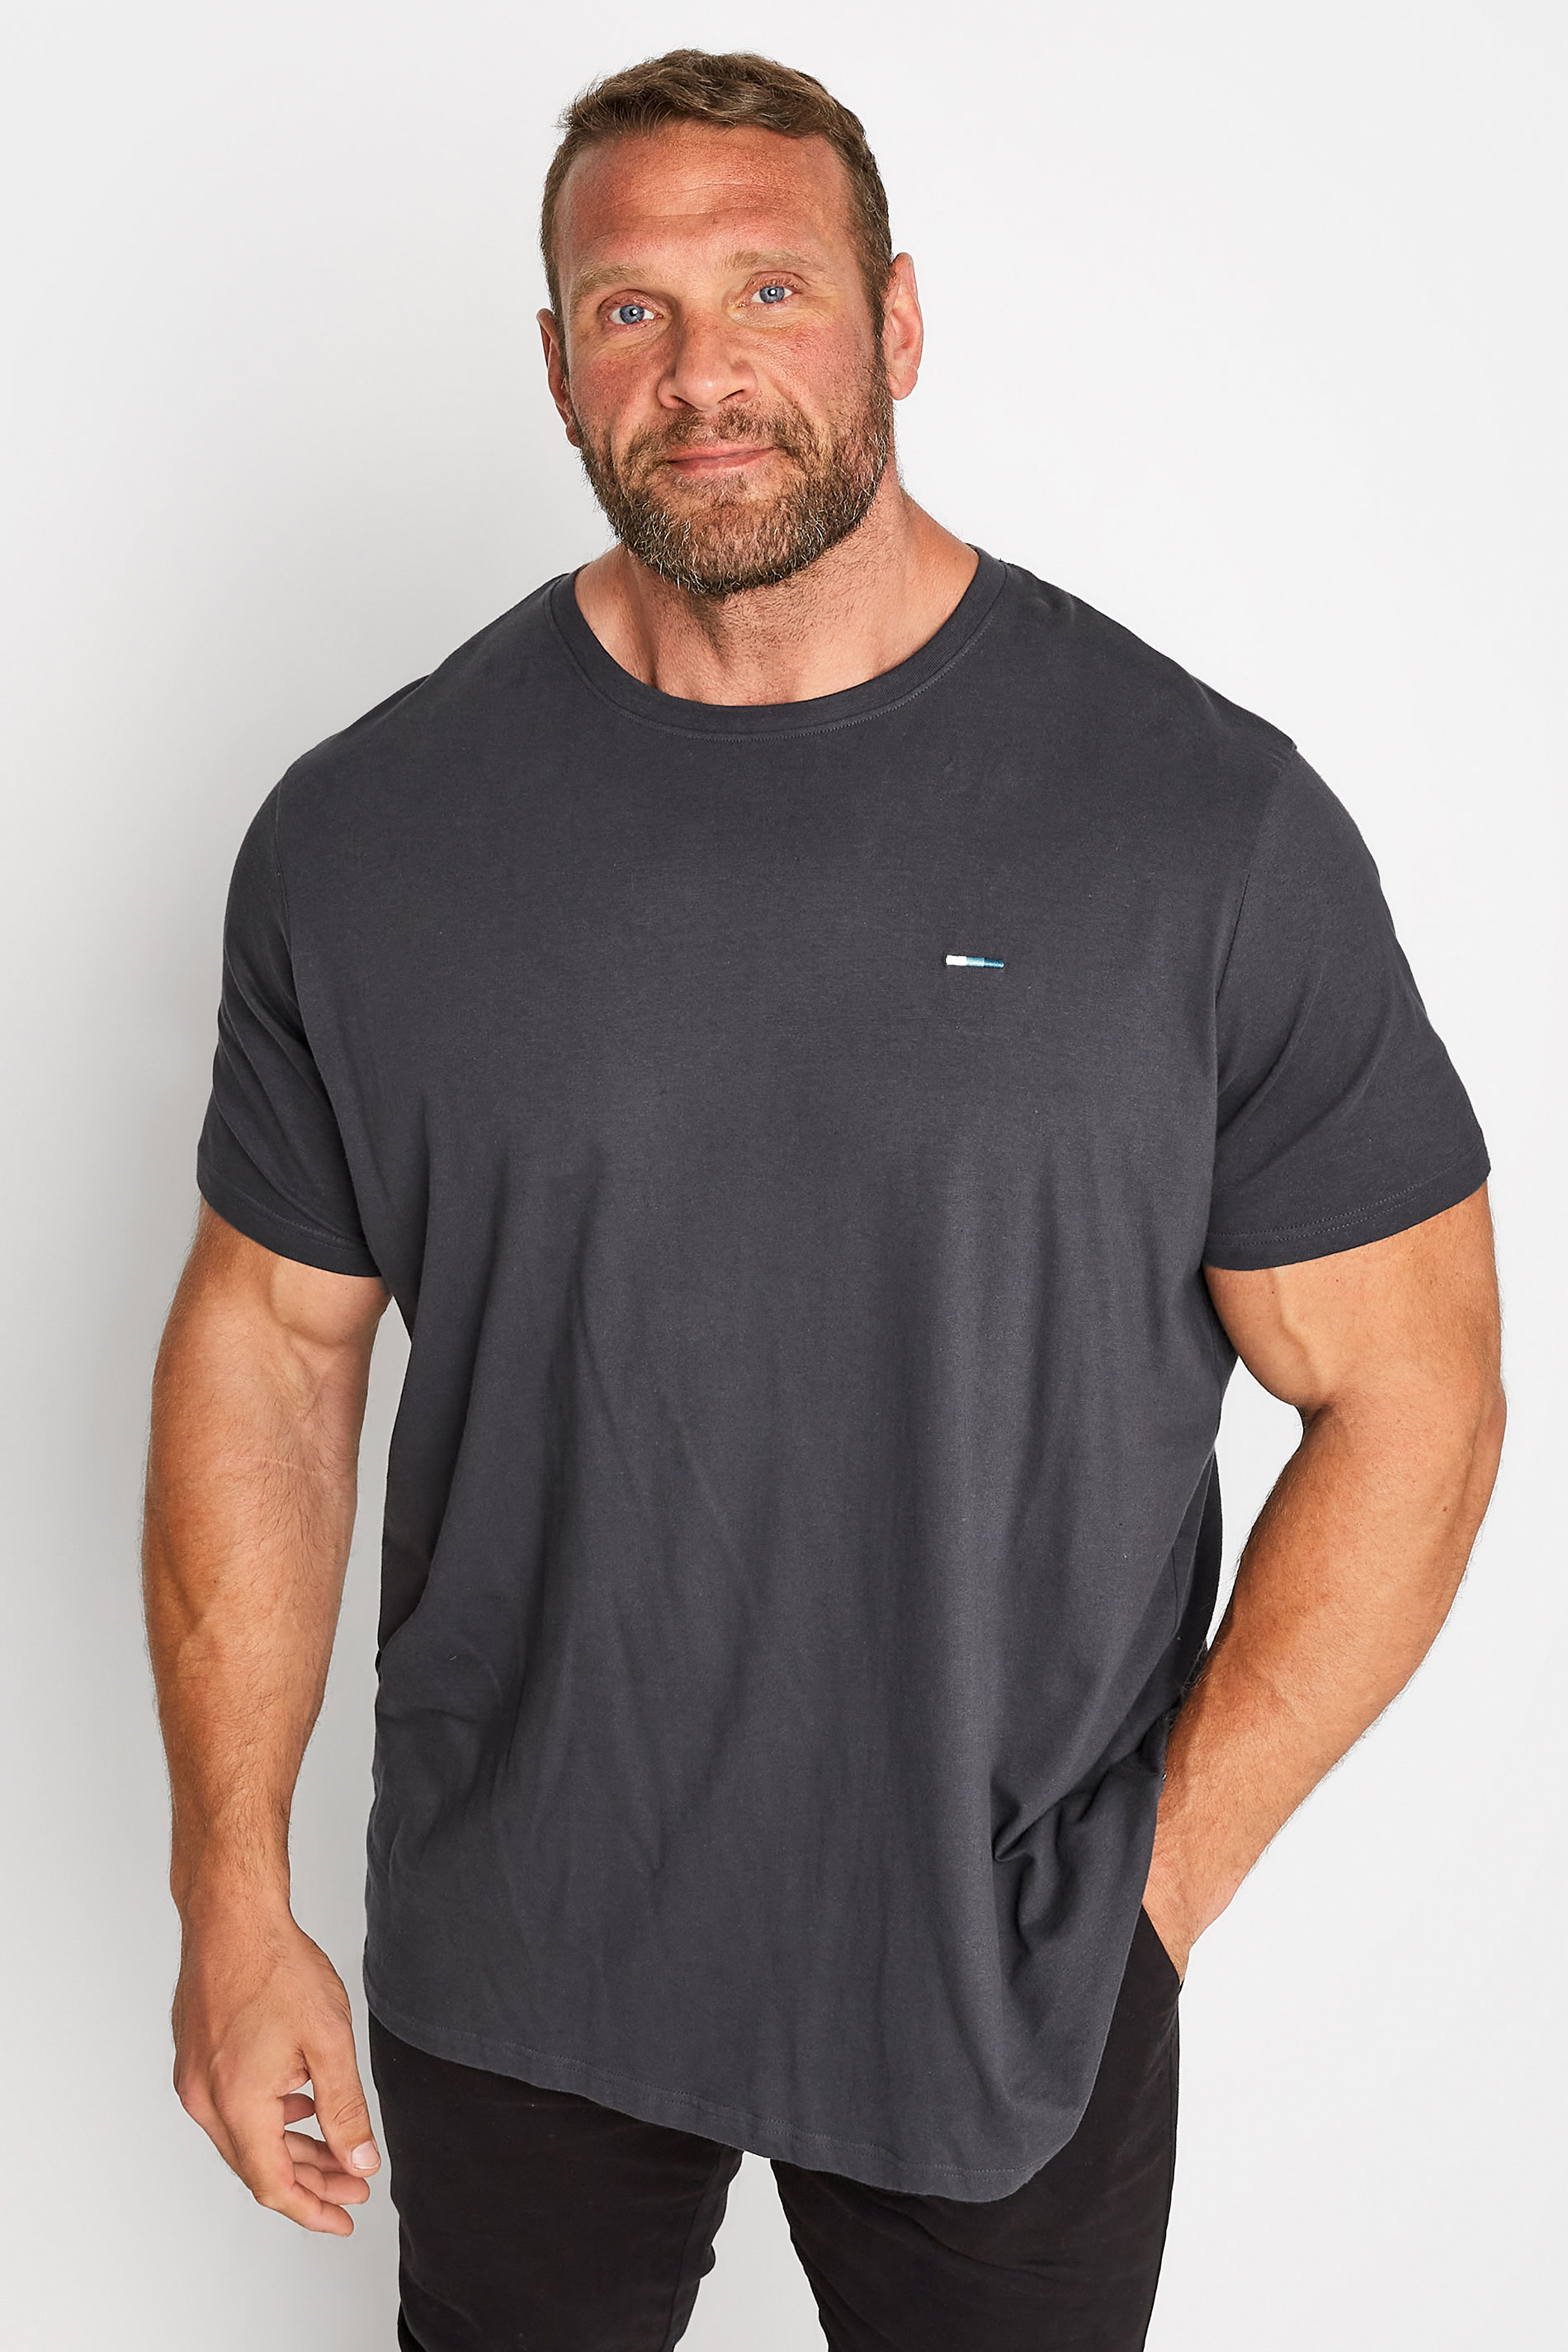 BadRhino Big & Tall Dark Grey Core T-Shirt | BadRhino 1